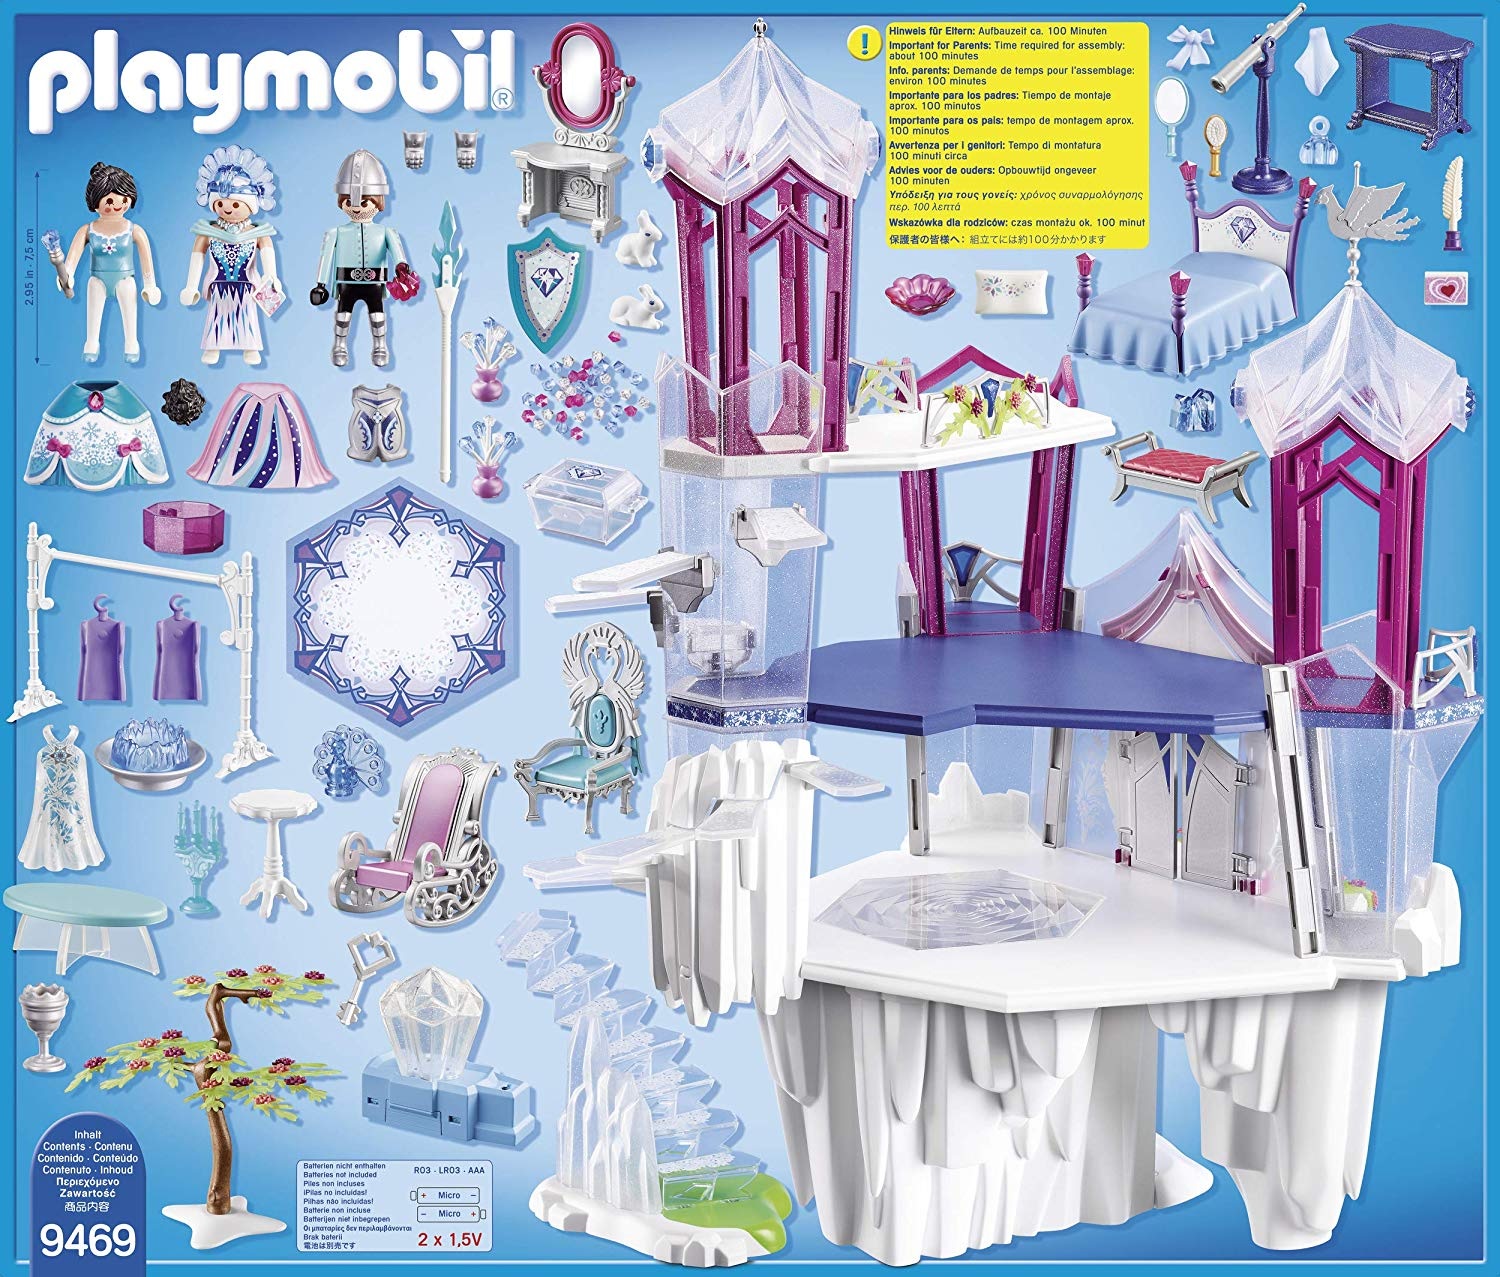 Playmobil Magic 9469 Bajeczny pałac kryształowy